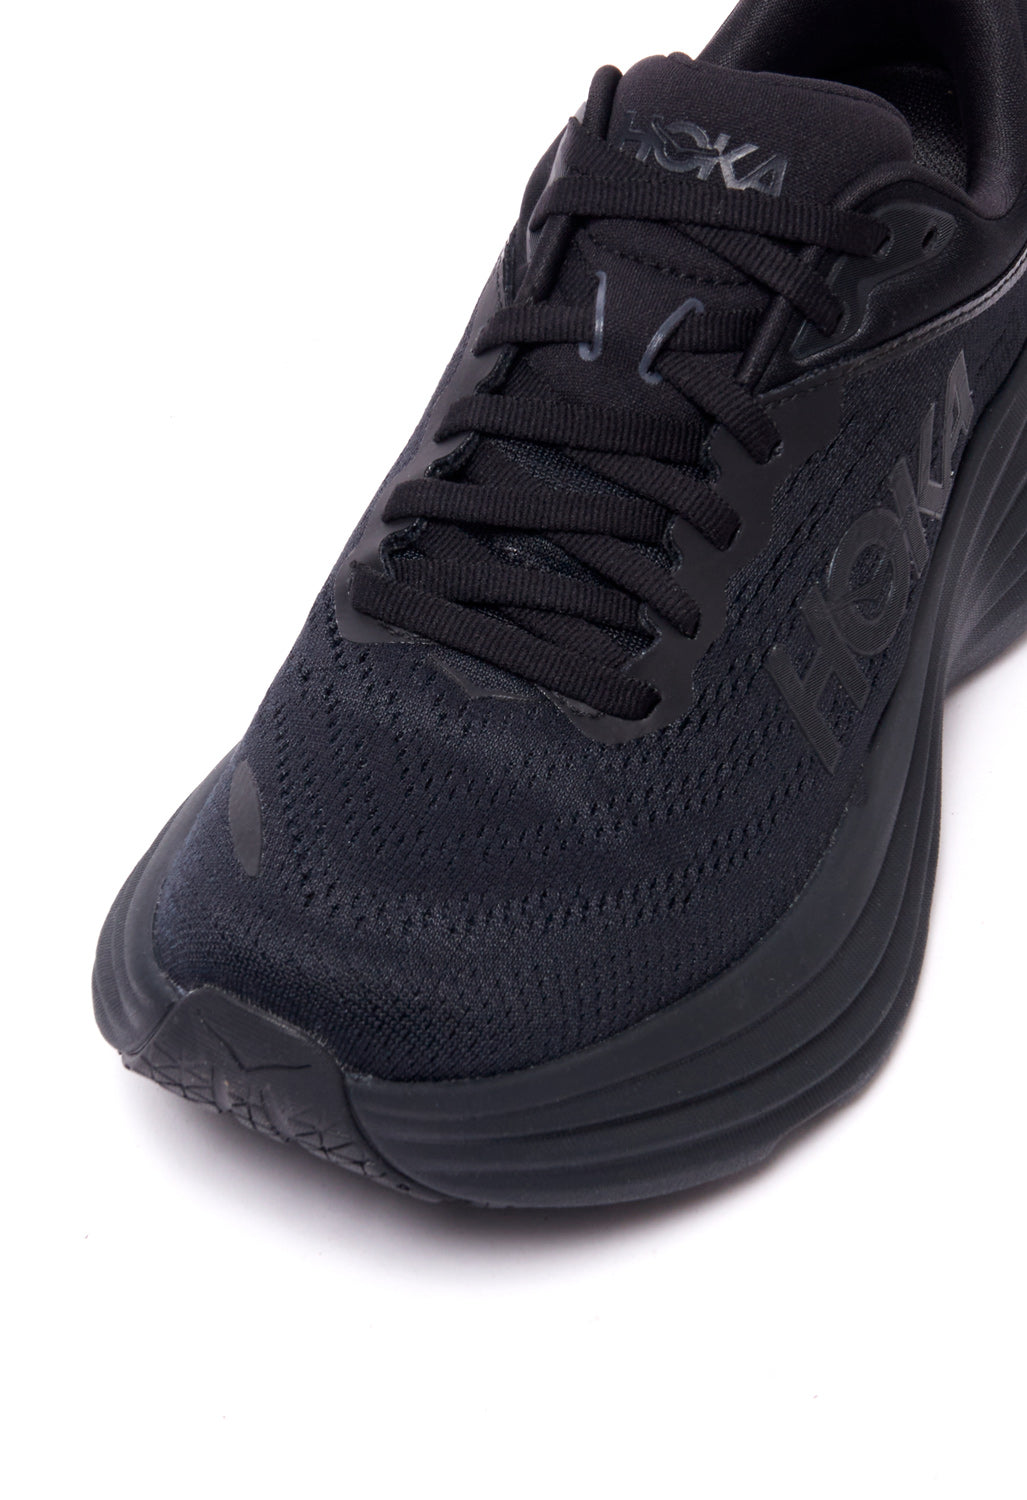 Hoka Bondi 8 Women's Shoes - Black/Black – Outsiders Store UK